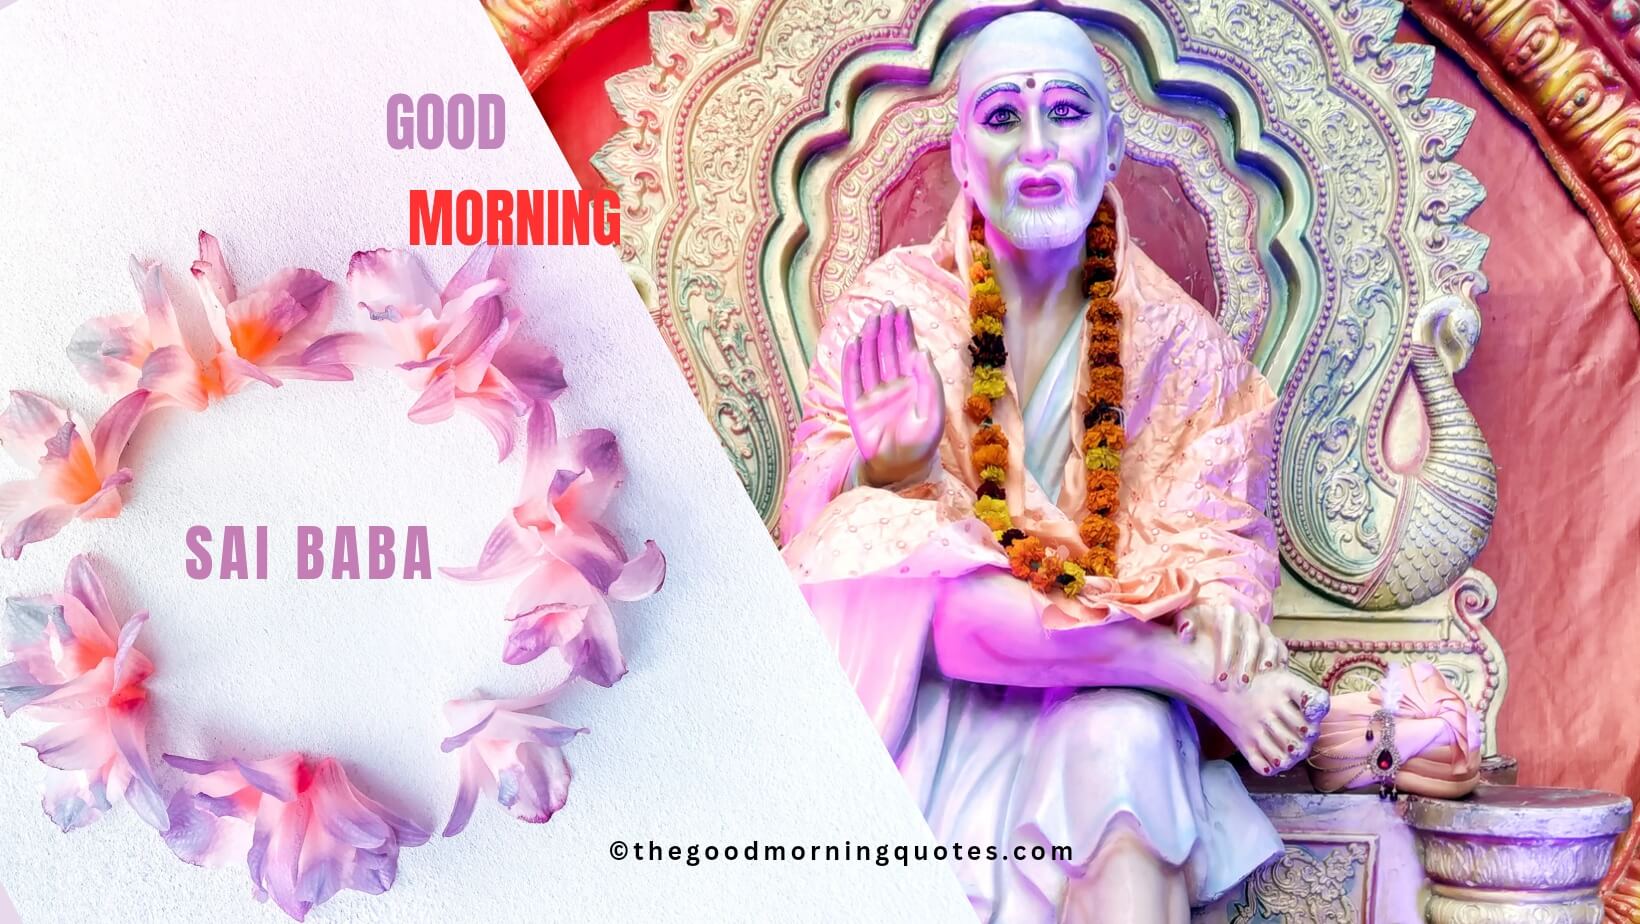 20+Top Sai Baba Good Morning Quotes in Hindi